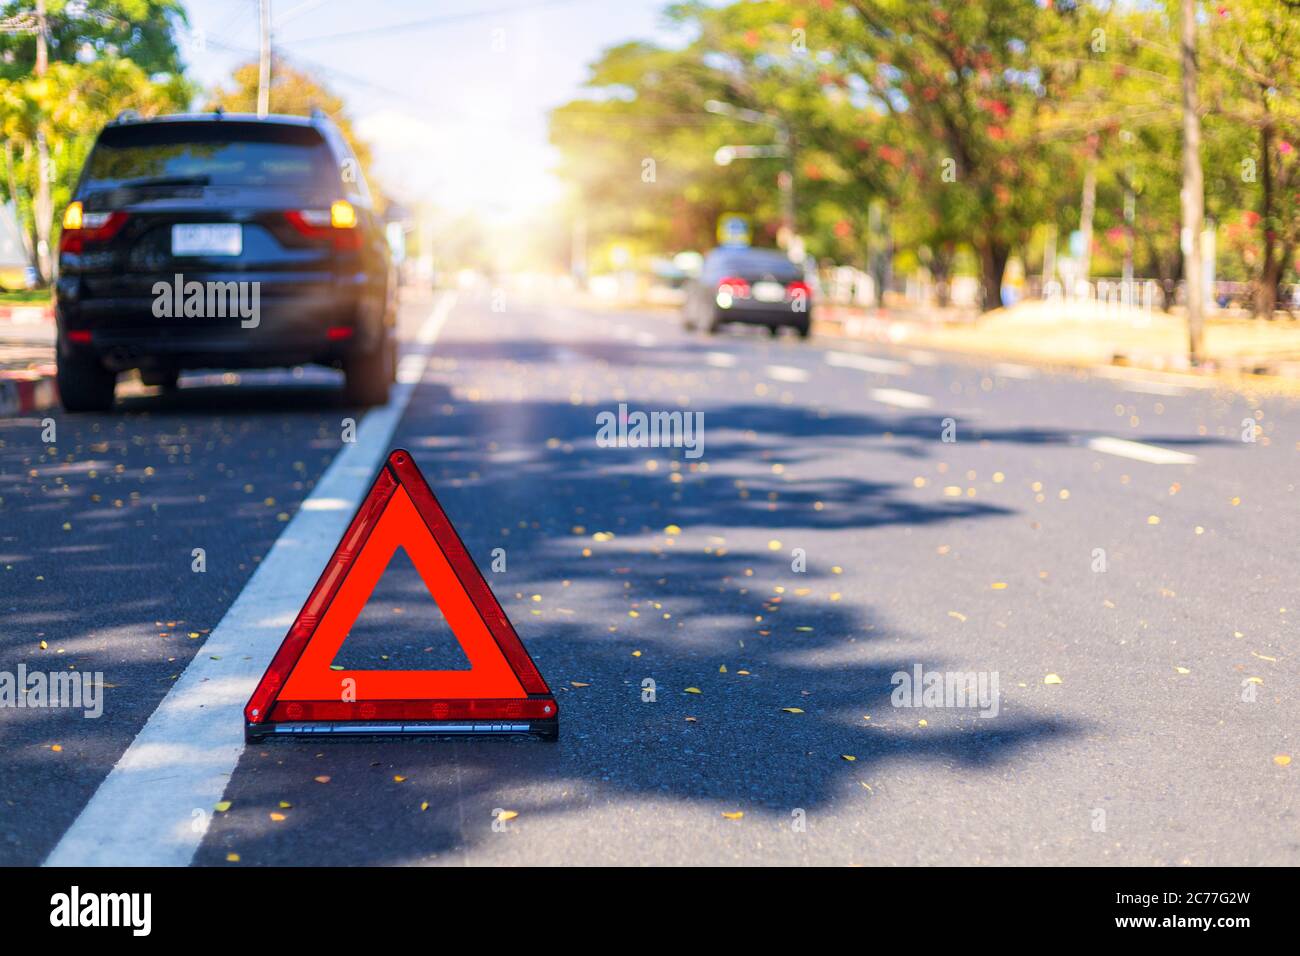 Triangle rouge, panneau d'arrêt d'urgence rouge, symbole d'urgence rouge avec arrêt de voiture et stationnement sur route. Banque D'Images